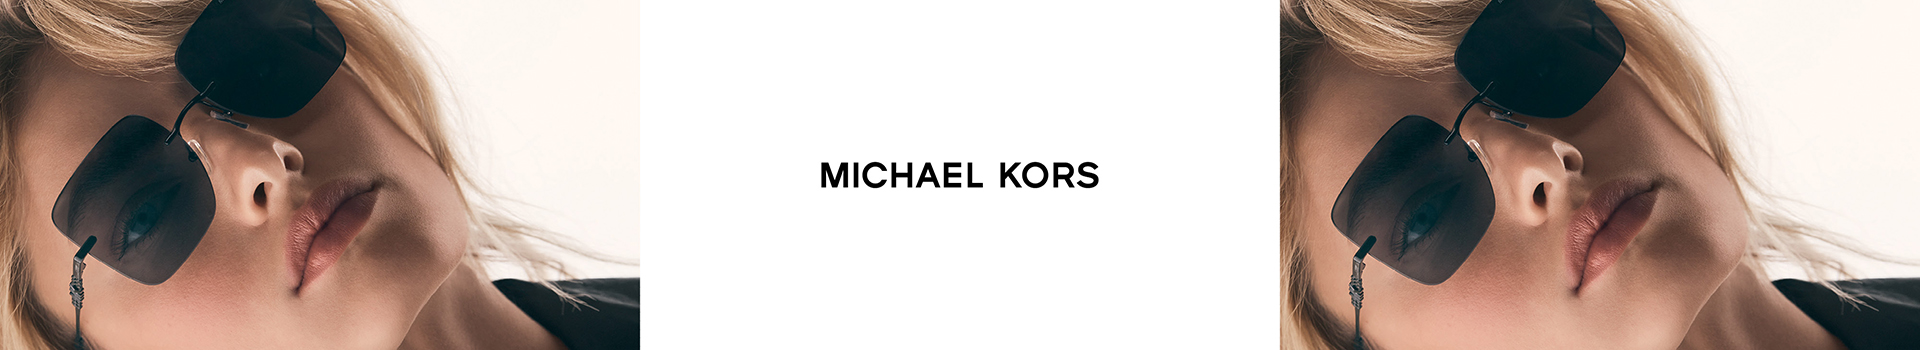 Michael Kors en GMO